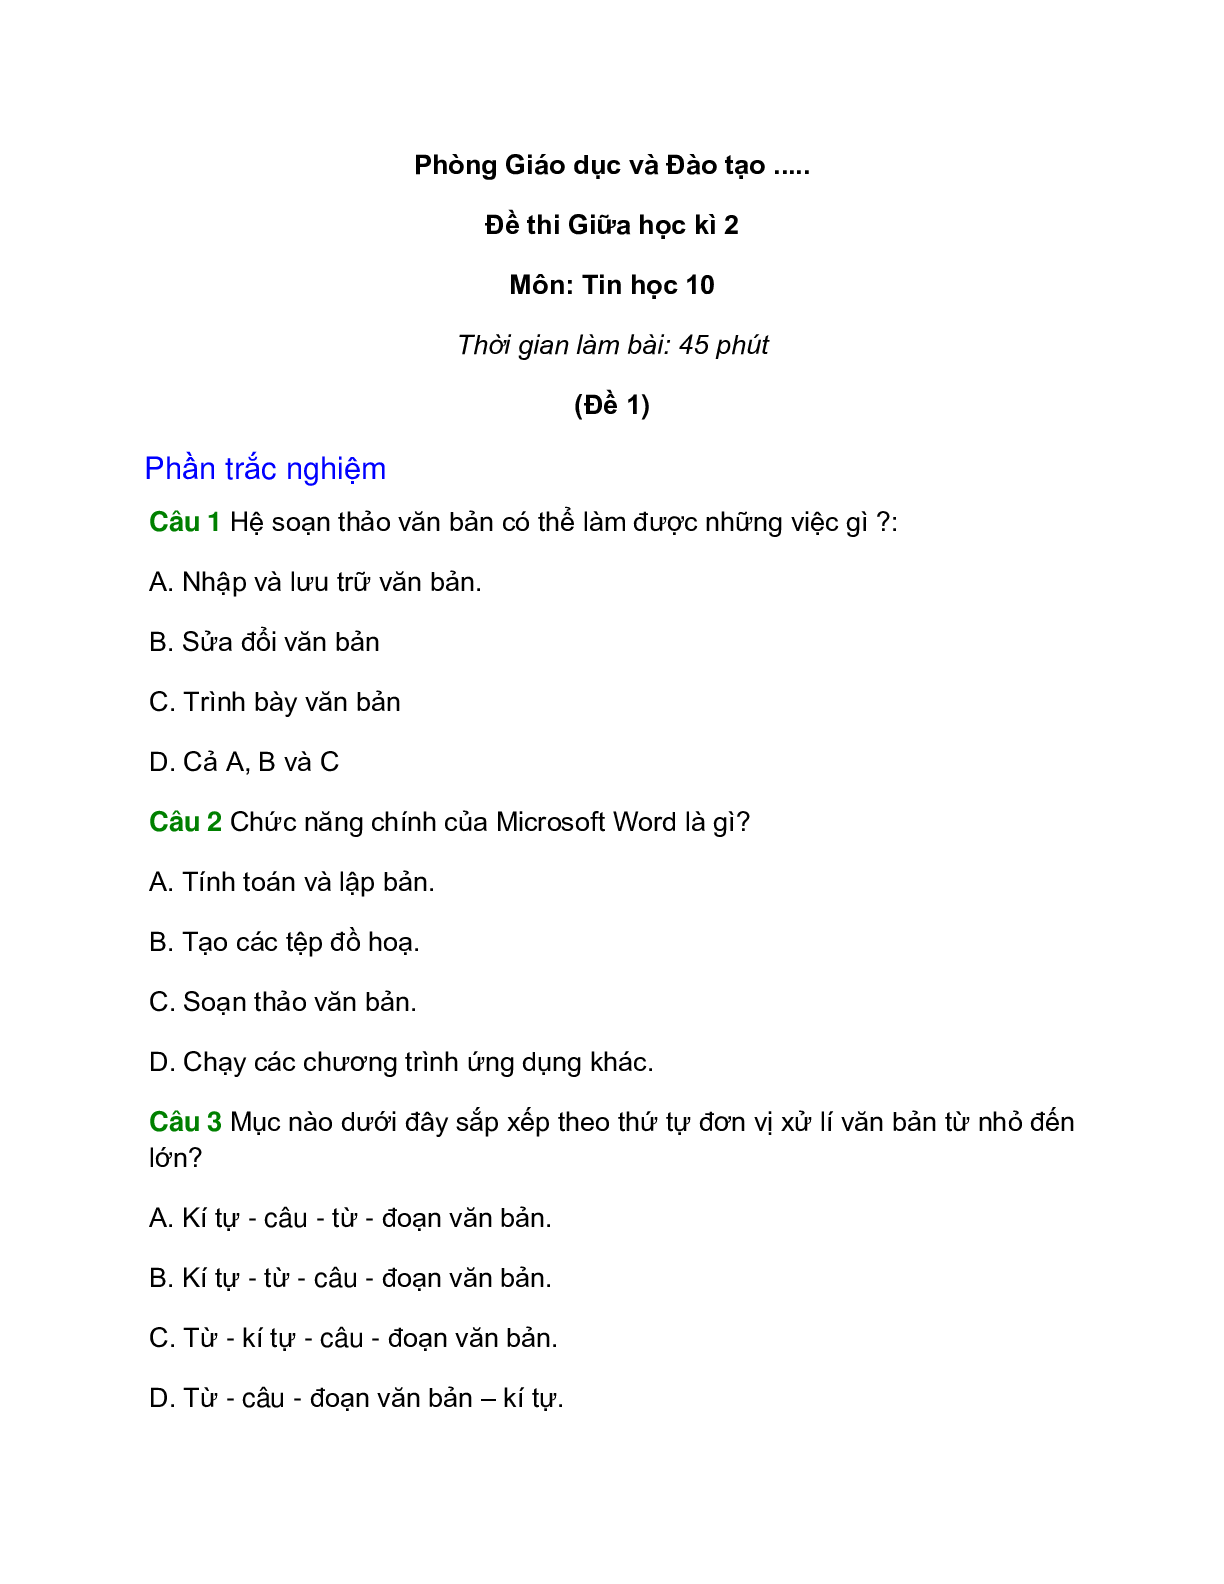 Đề kiểm tra Tin học 10 Giữa học kì 2 có đáp án (4 đề) (trang 1)